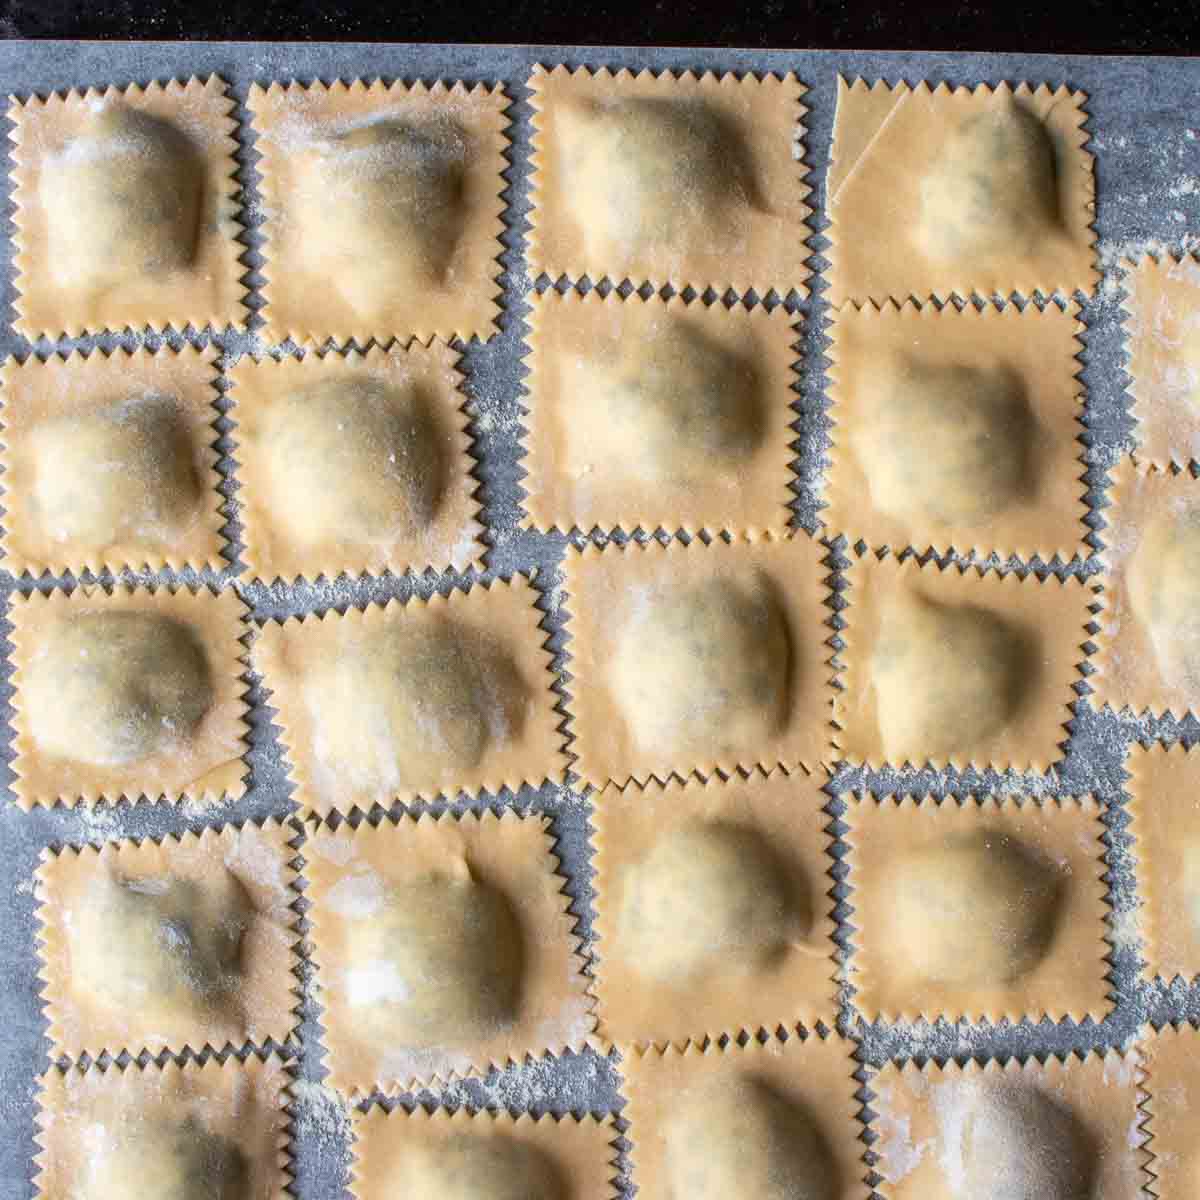 Filled ravioli arranged on a baking sheet.